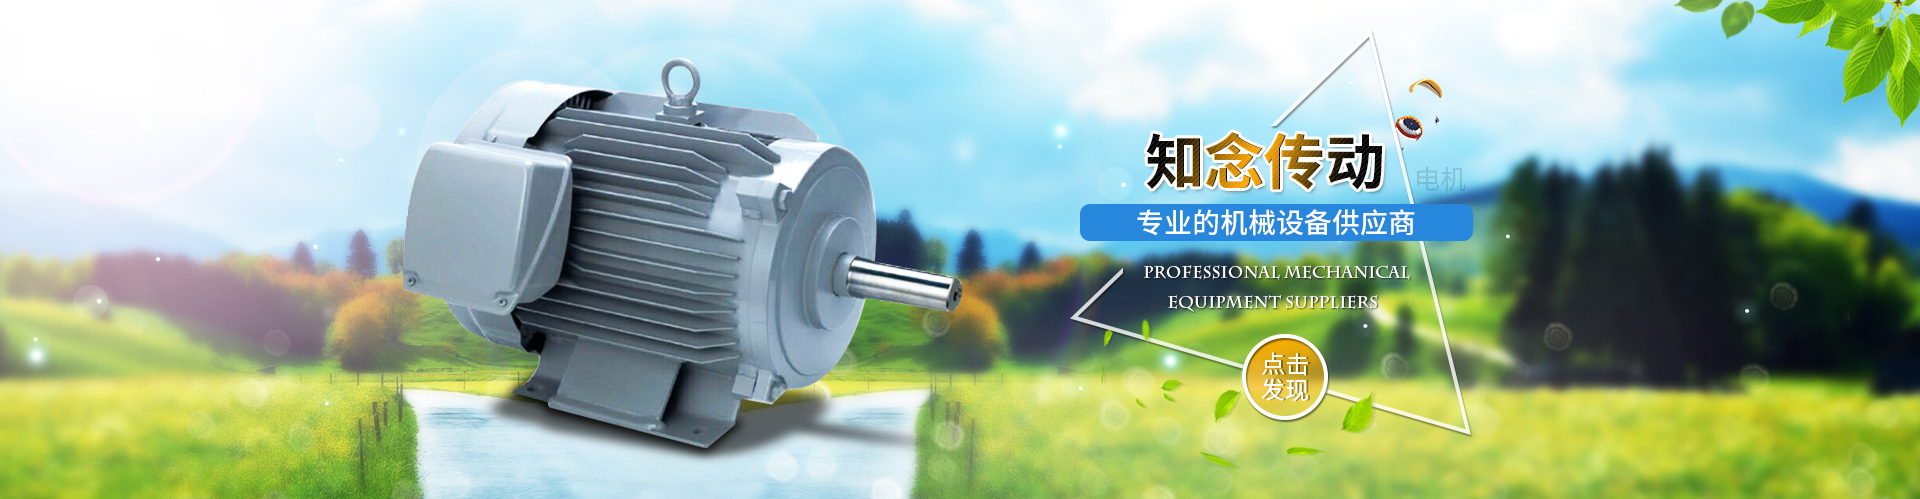 上海知念自动化设备有限公司- 三菱电机SF-PR系列